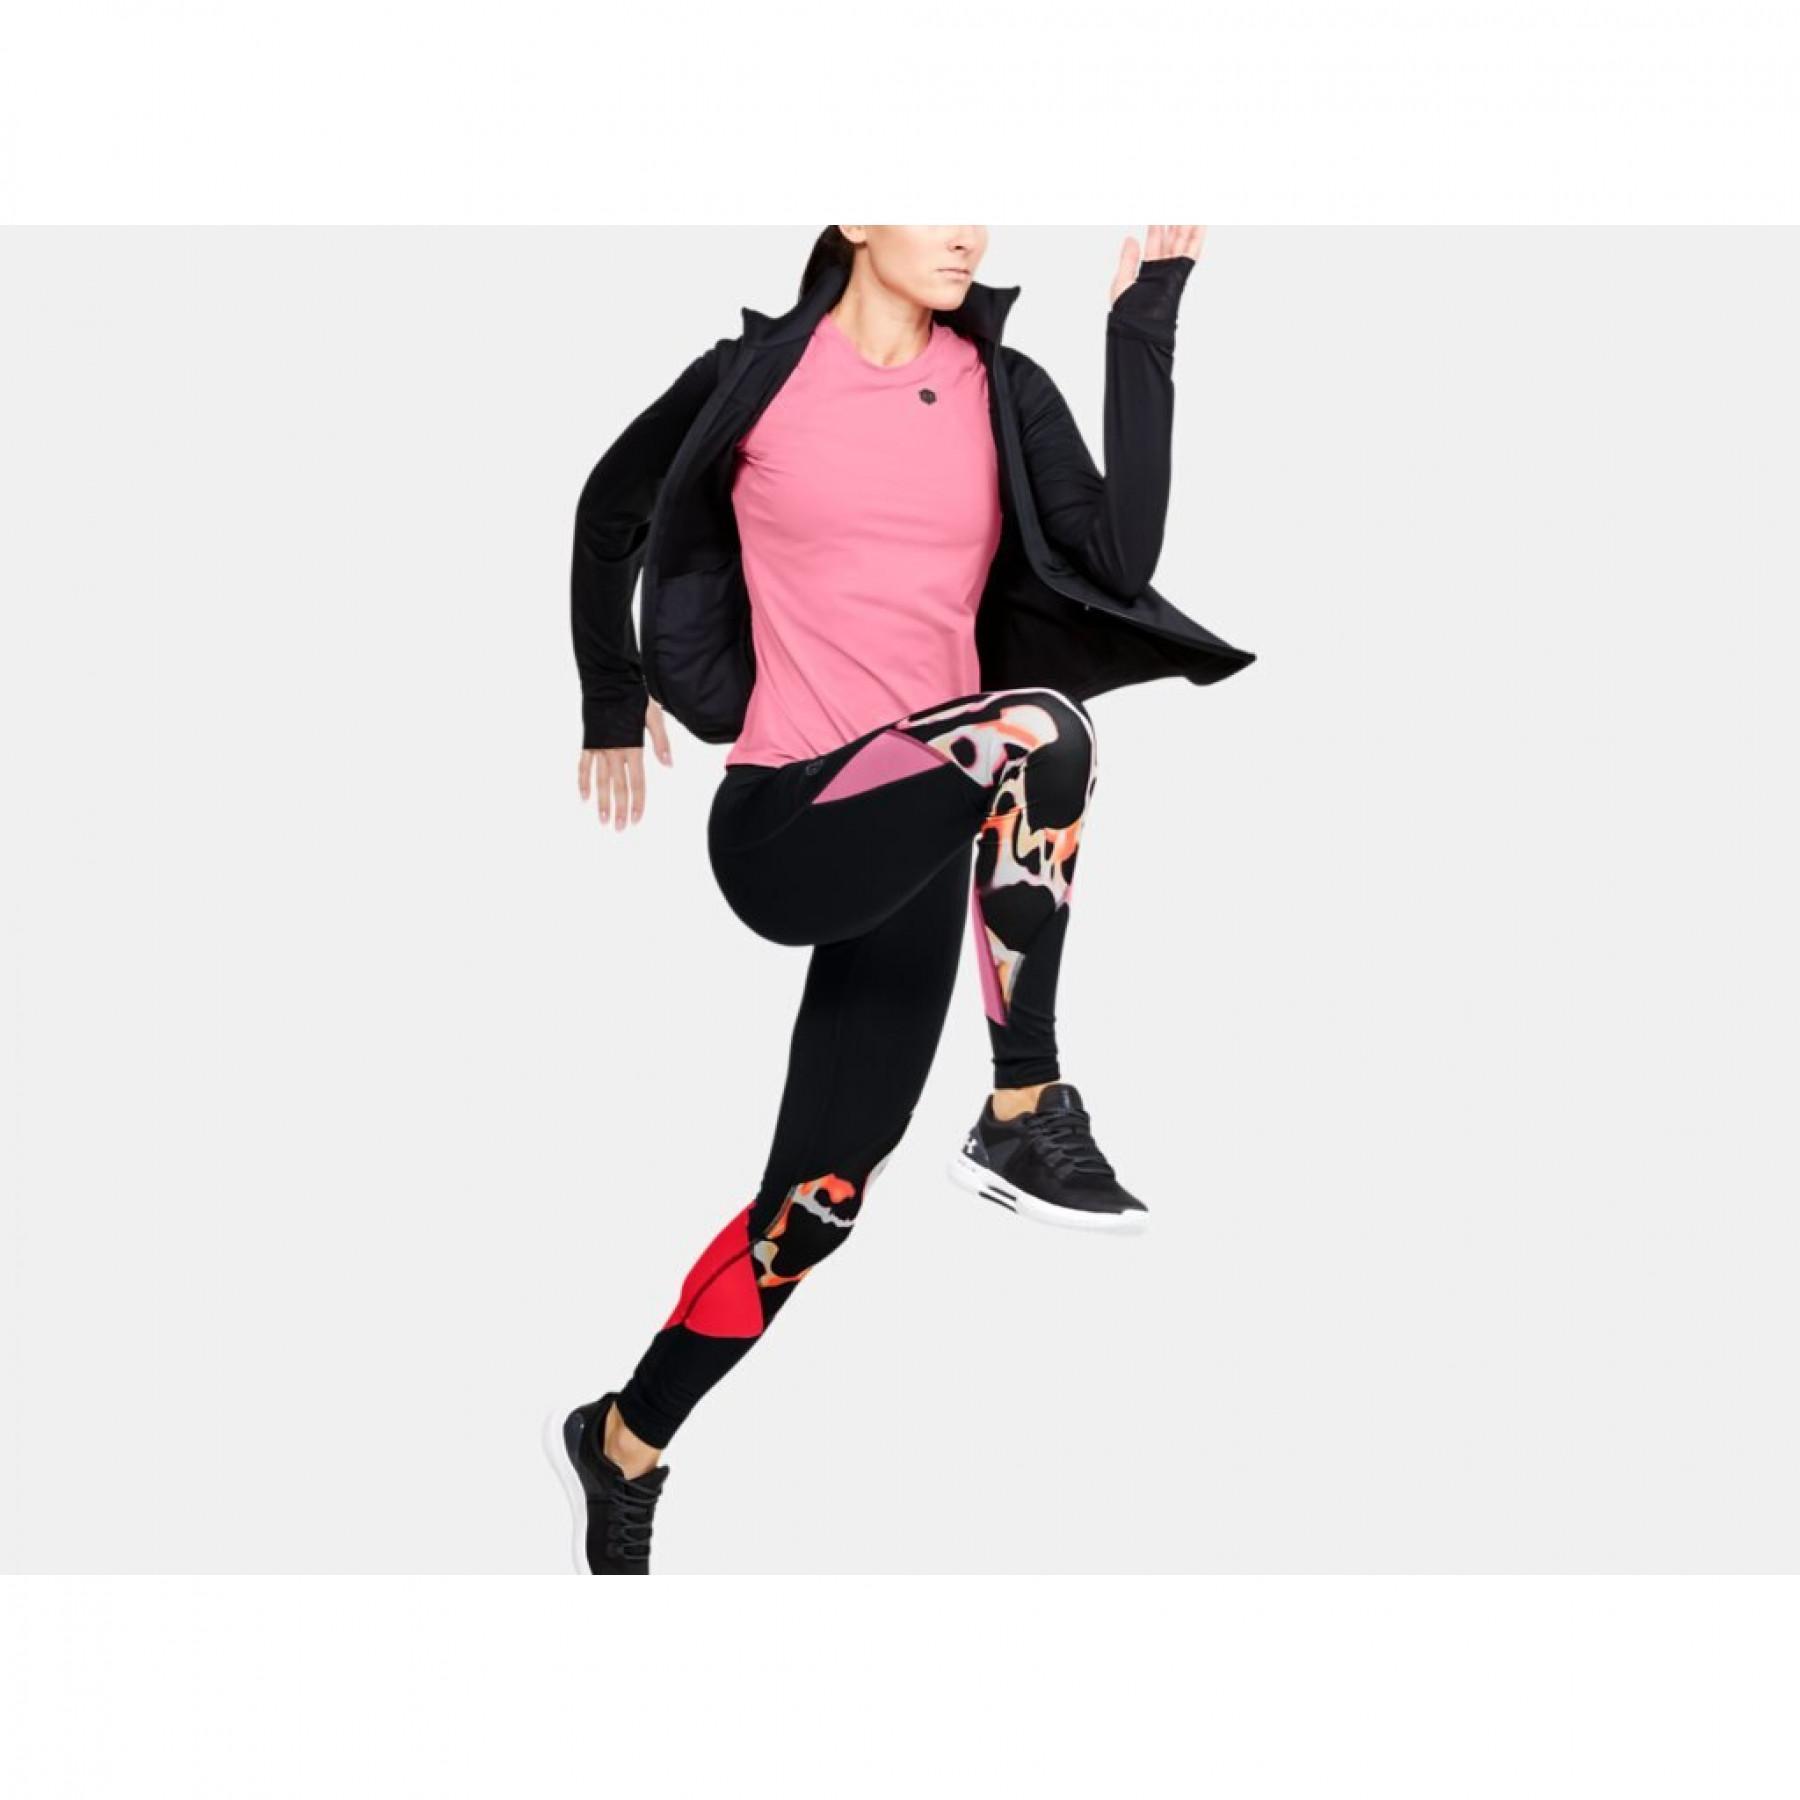 Women's Legging Under Armour RUSH™ Print Color Block